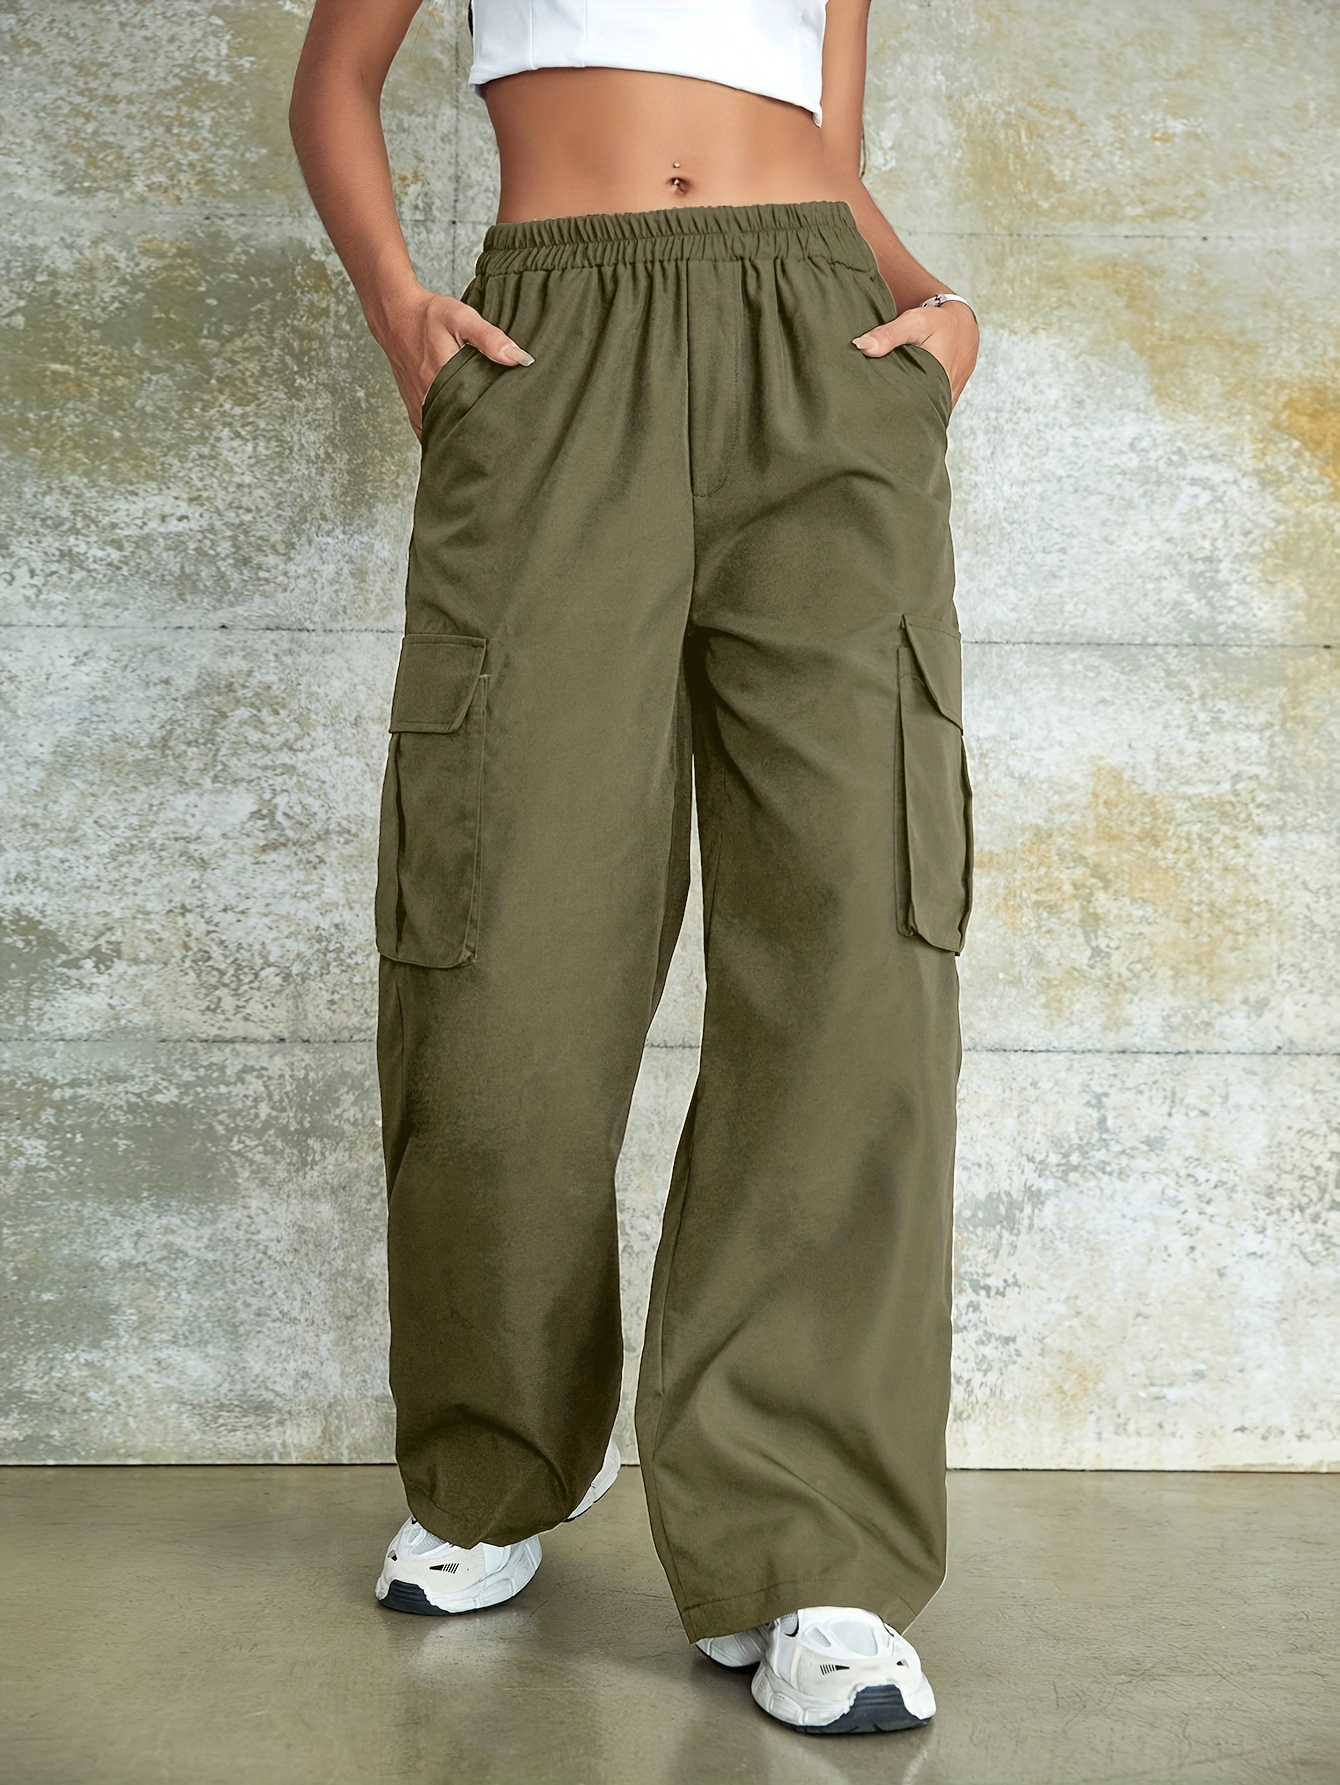 Lolmot Cargo Pants Women Elastic High Waist Baggy Cargo Jeans Flap Pocket  Straight Leg Y2K Streetwear Trousers Denim Pants 